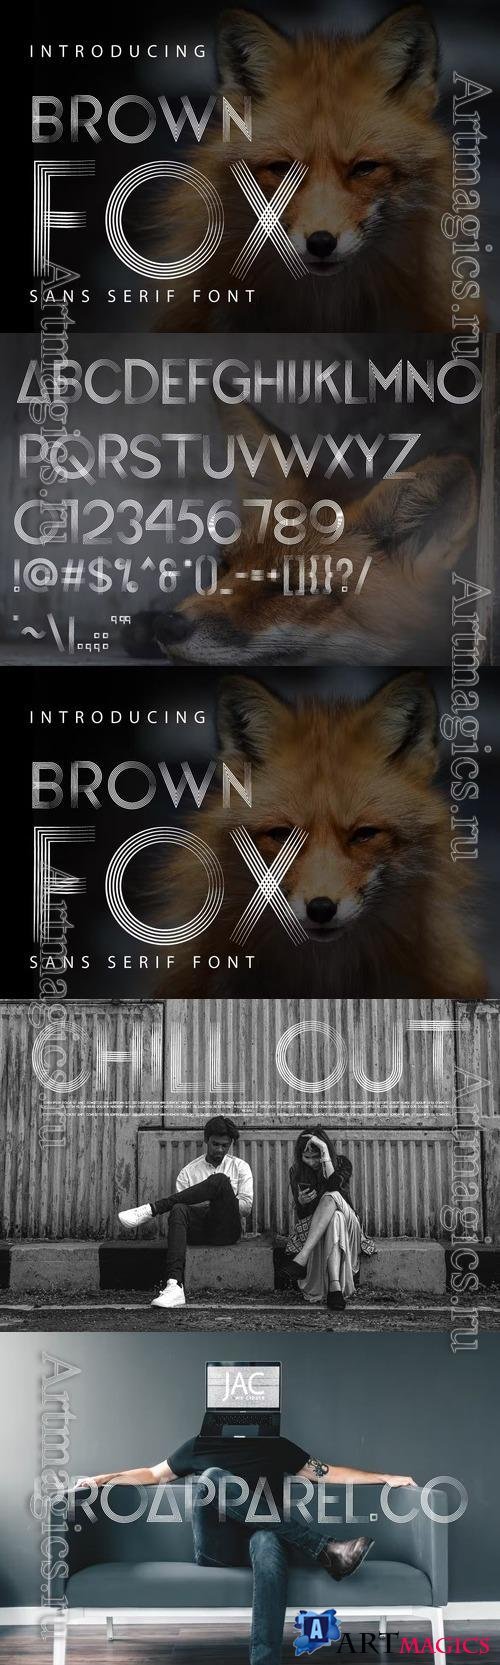 Brownfox - Sans Serif Fonts